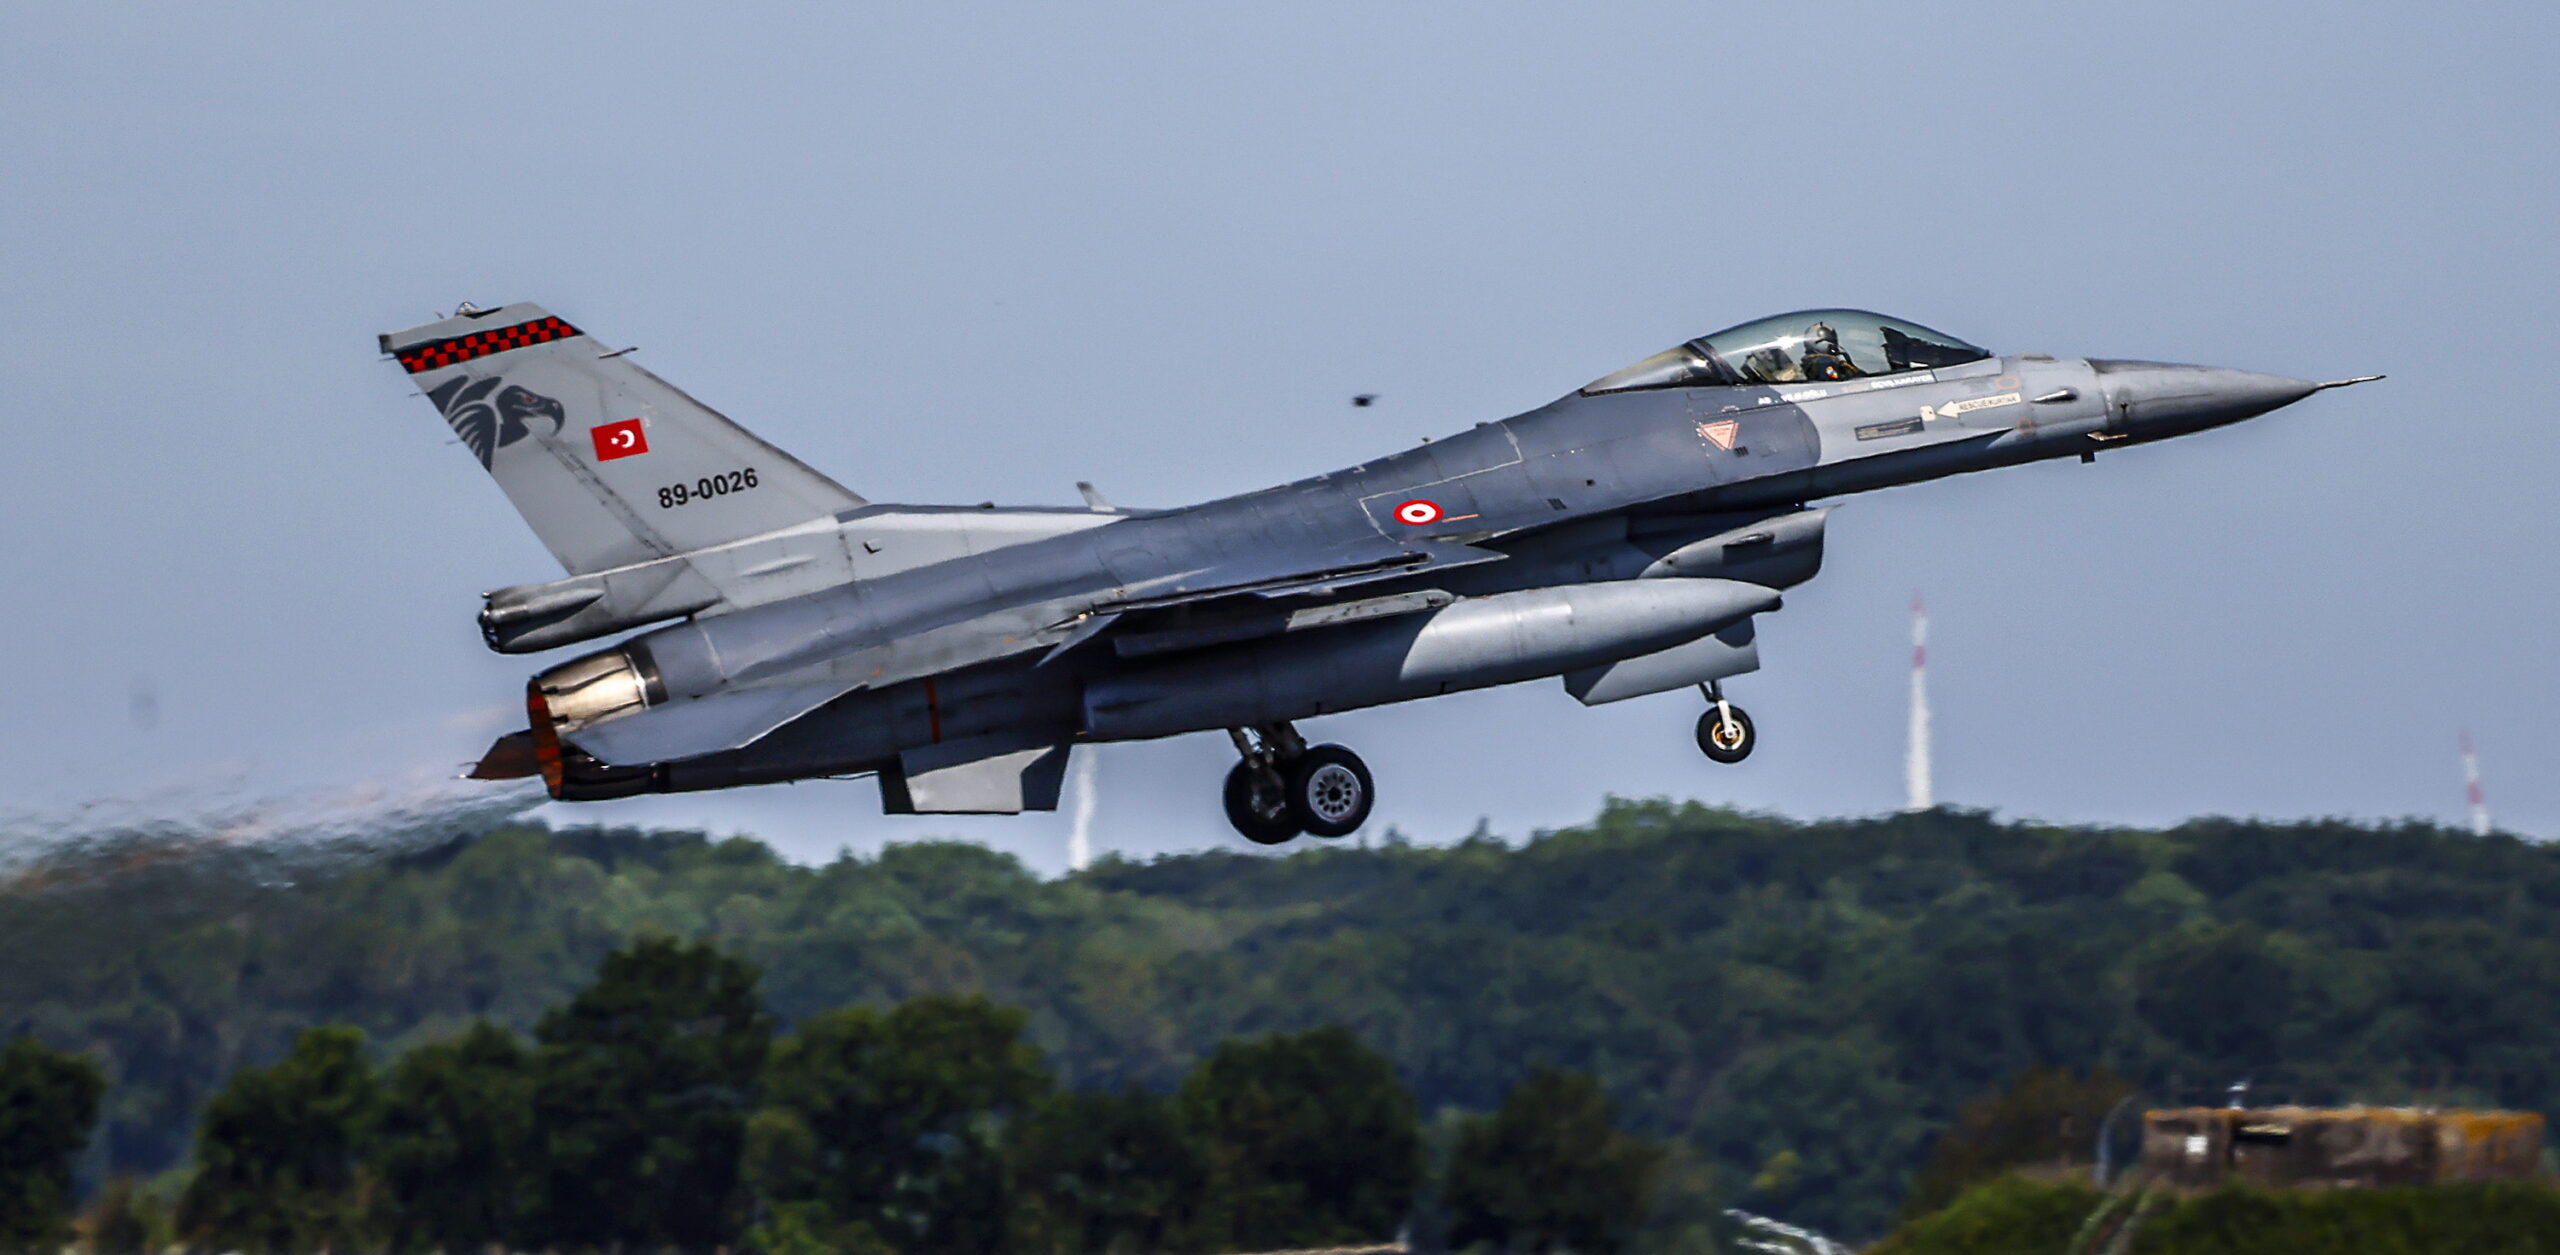 Λ. Ραπτάκης, πολιτειακός γερουσιαστής Ρόουντ Άϊλαντ: «Πρέπει να μπλοκάρουμε την προμήθεια F-16 από την Τουρκία, όπως τα F-35»